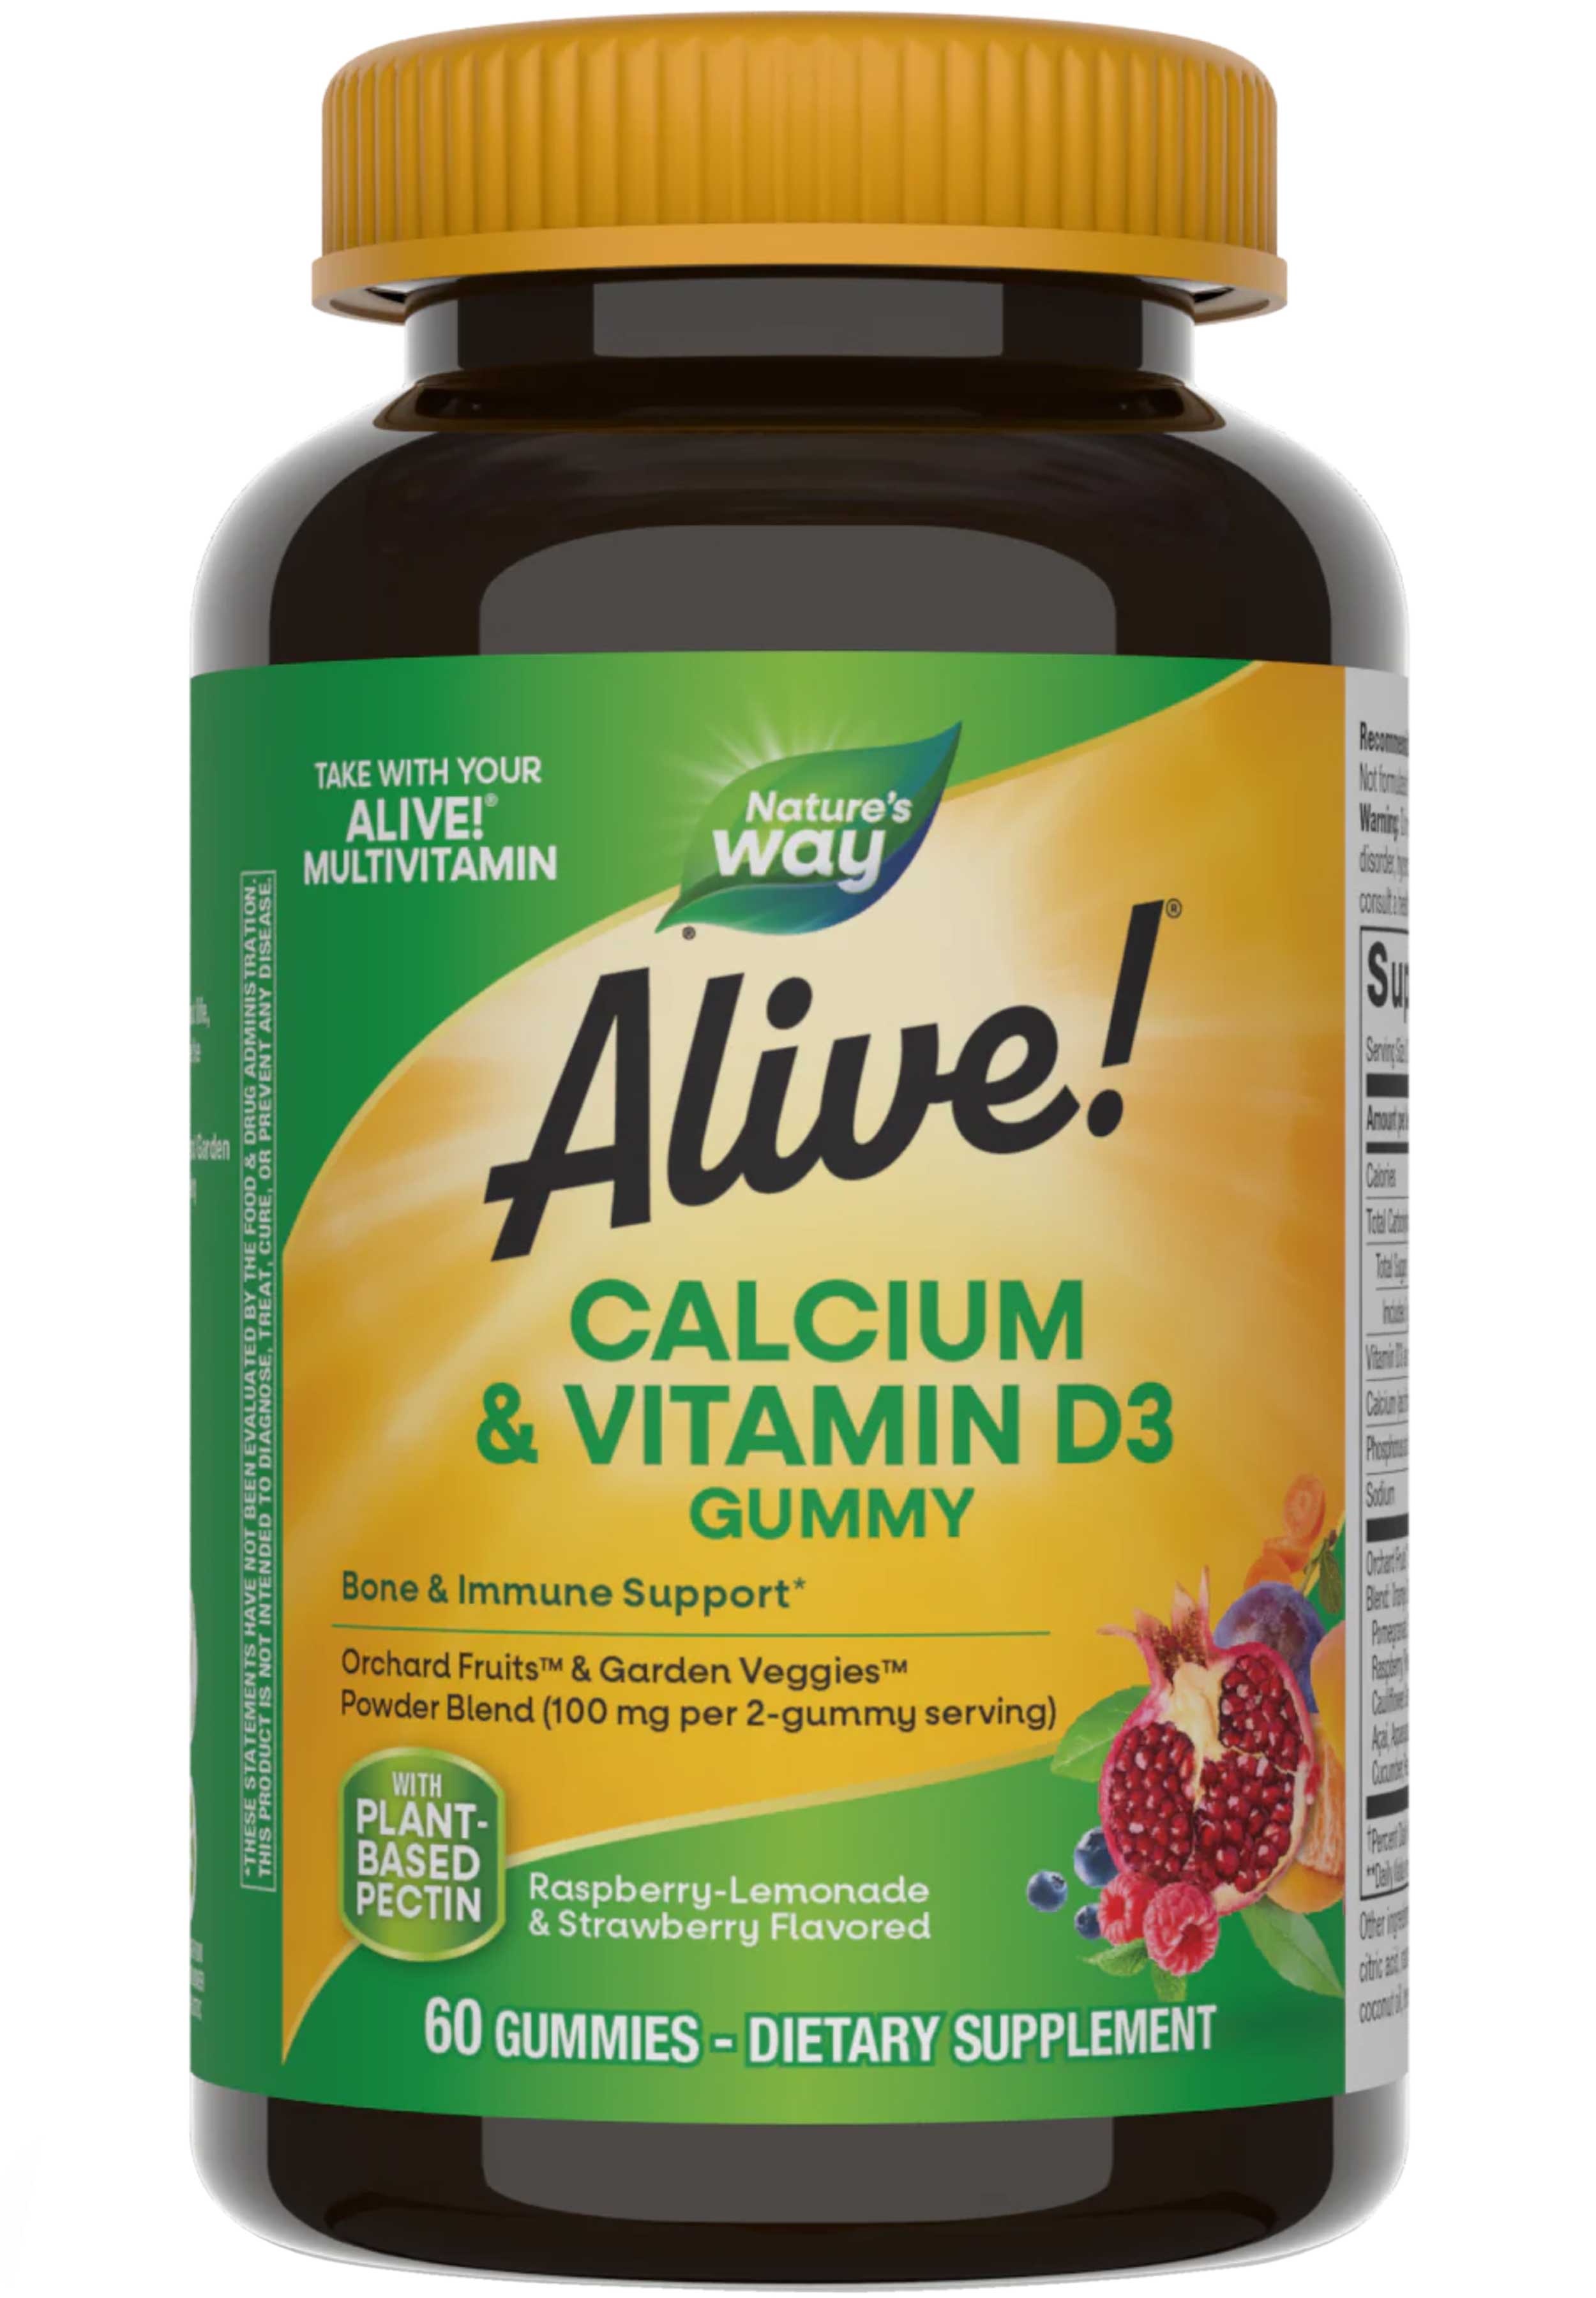 Nature's Way Alive! Calcium + Vitamin D3 Gummies